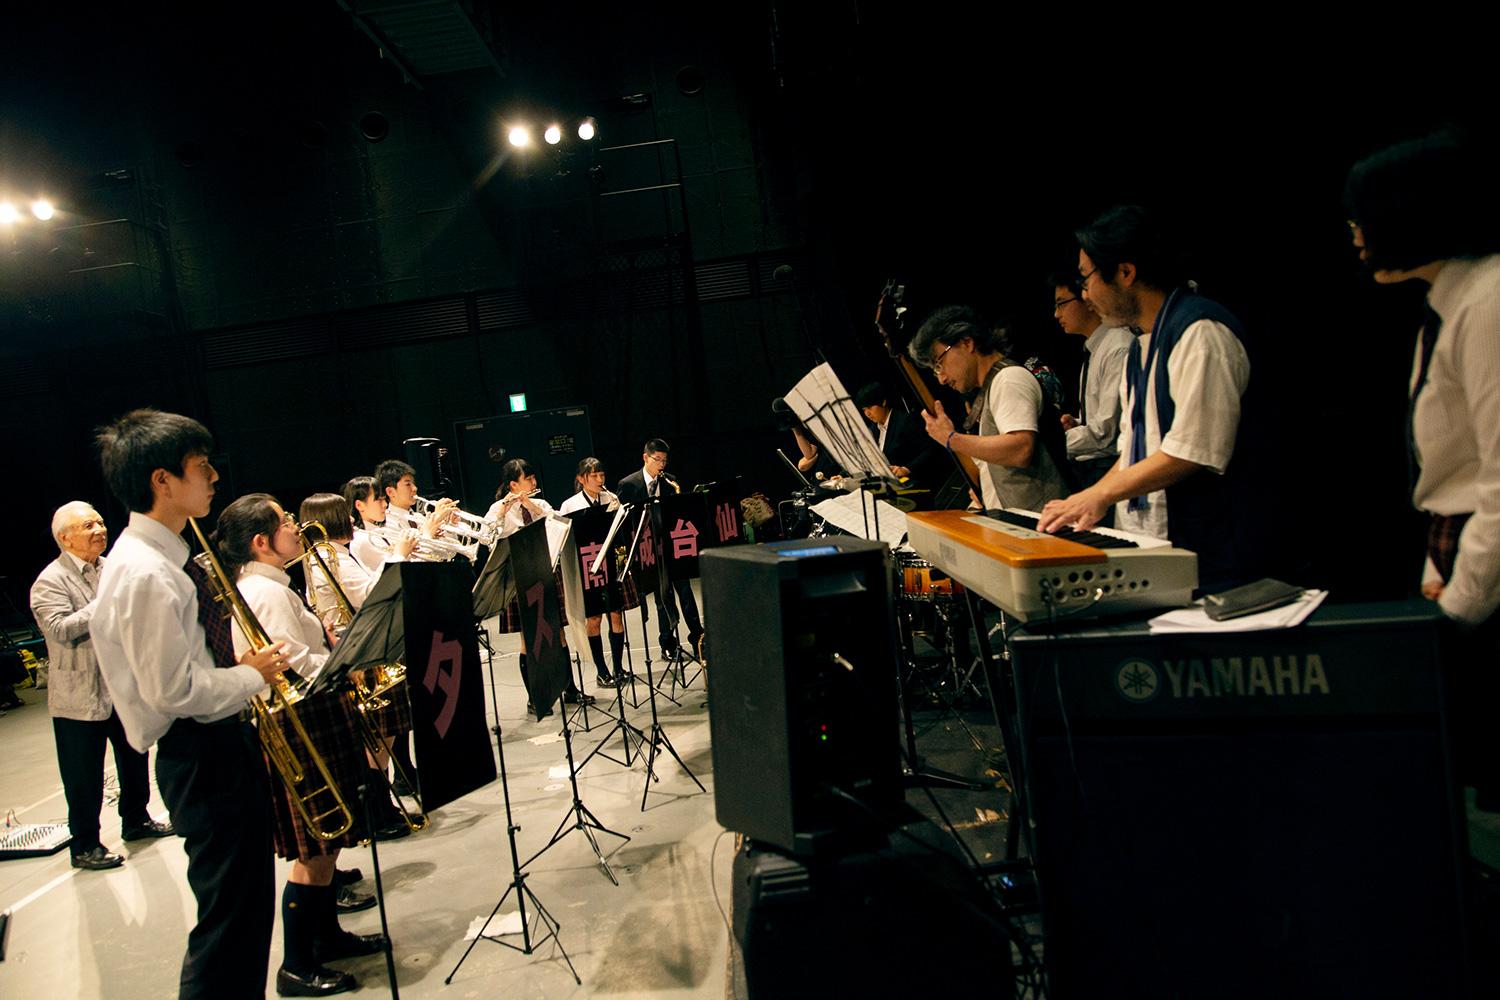 観客席はこの写真の左側、渡辺貞夫さんの後ろ。つまり、仙台城南高等学校吹奏楽部は、ギャラリーに背を向けて演奏しています。彼らの目の前には、プロのミュージシャンが。